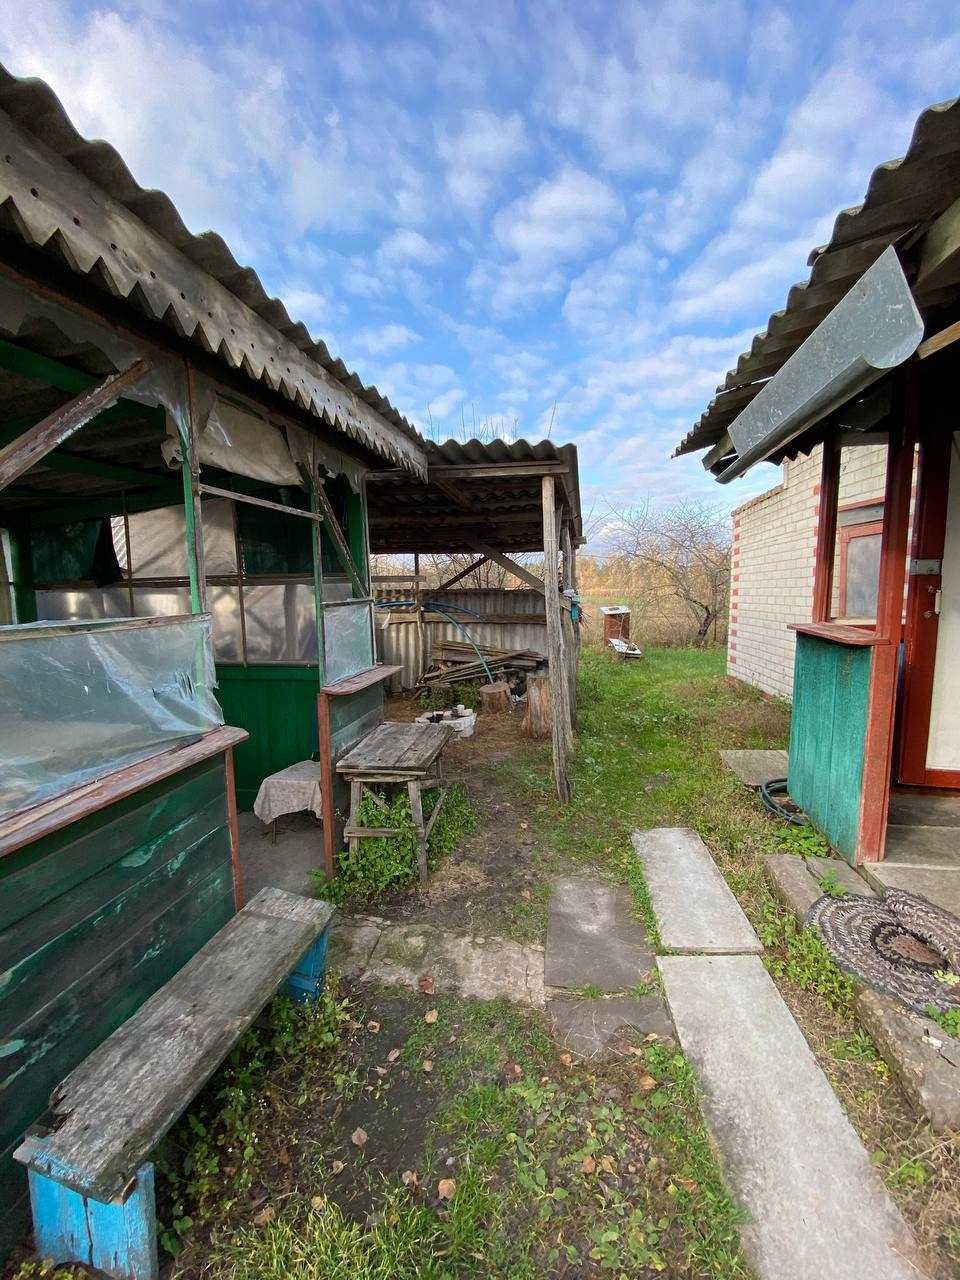 Продаж будинка в селі Снов’янка (20 км від Чернігова).